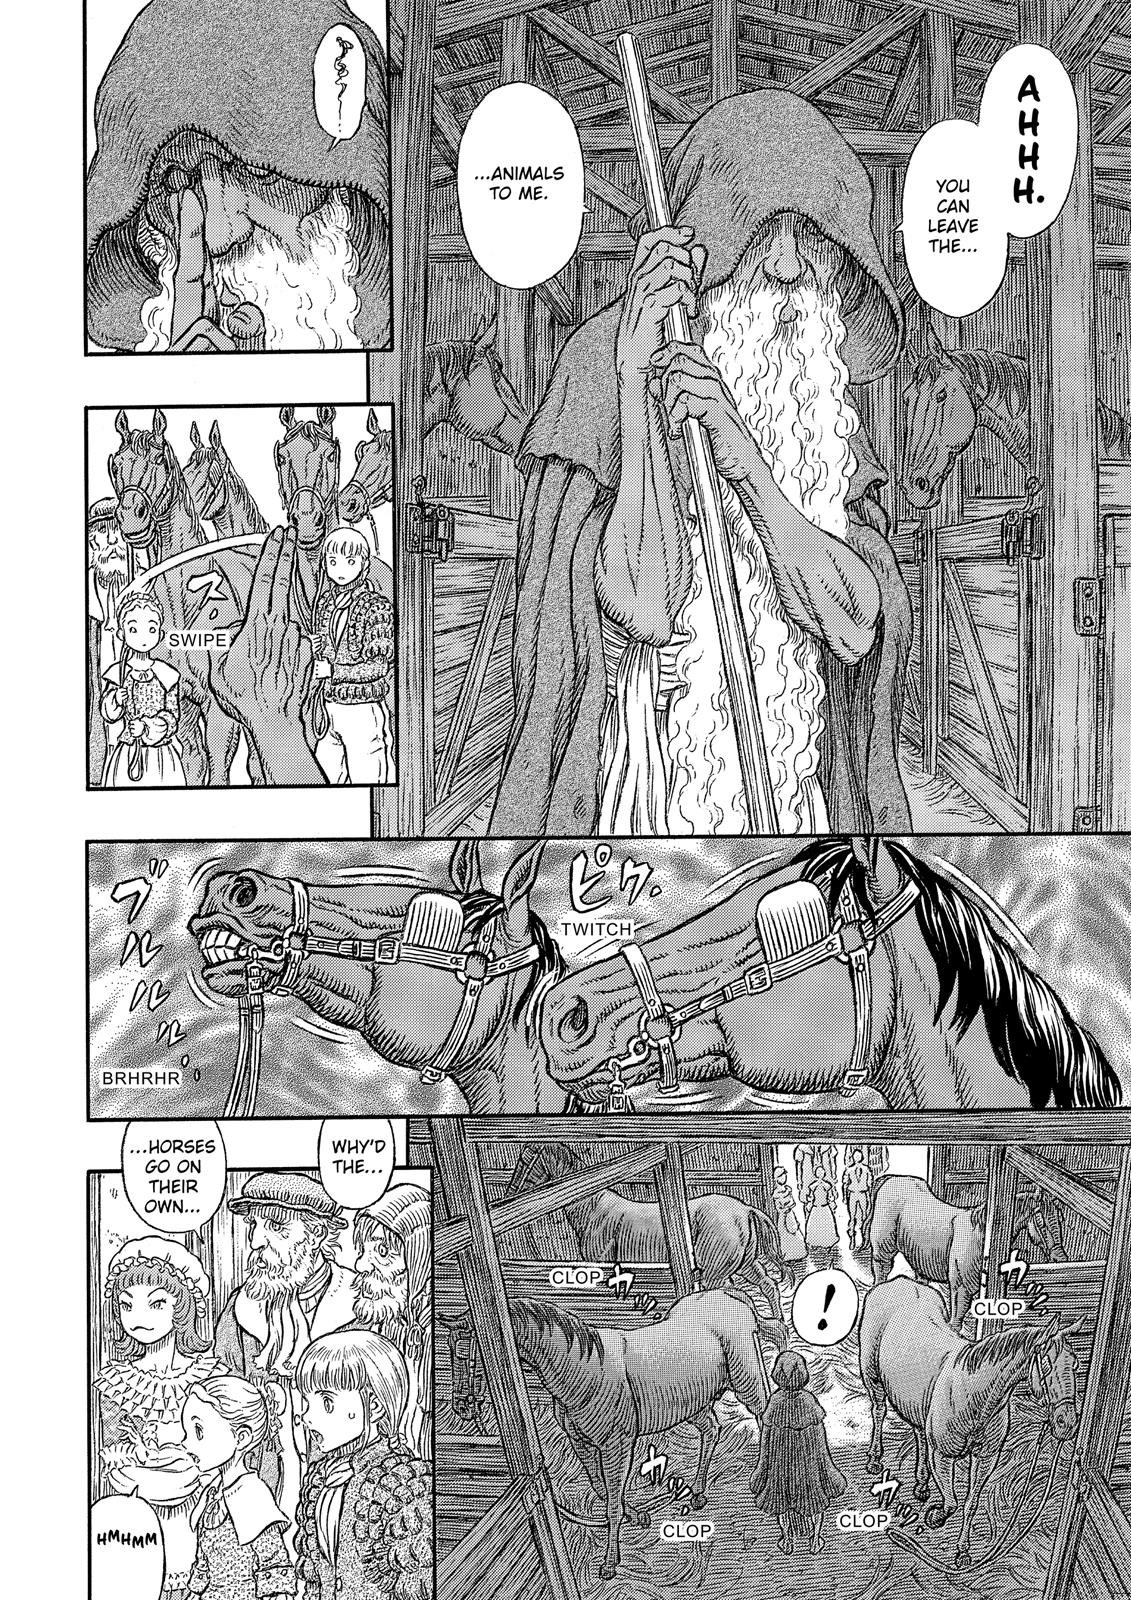 Berserk Manga Chapter 334 image 23